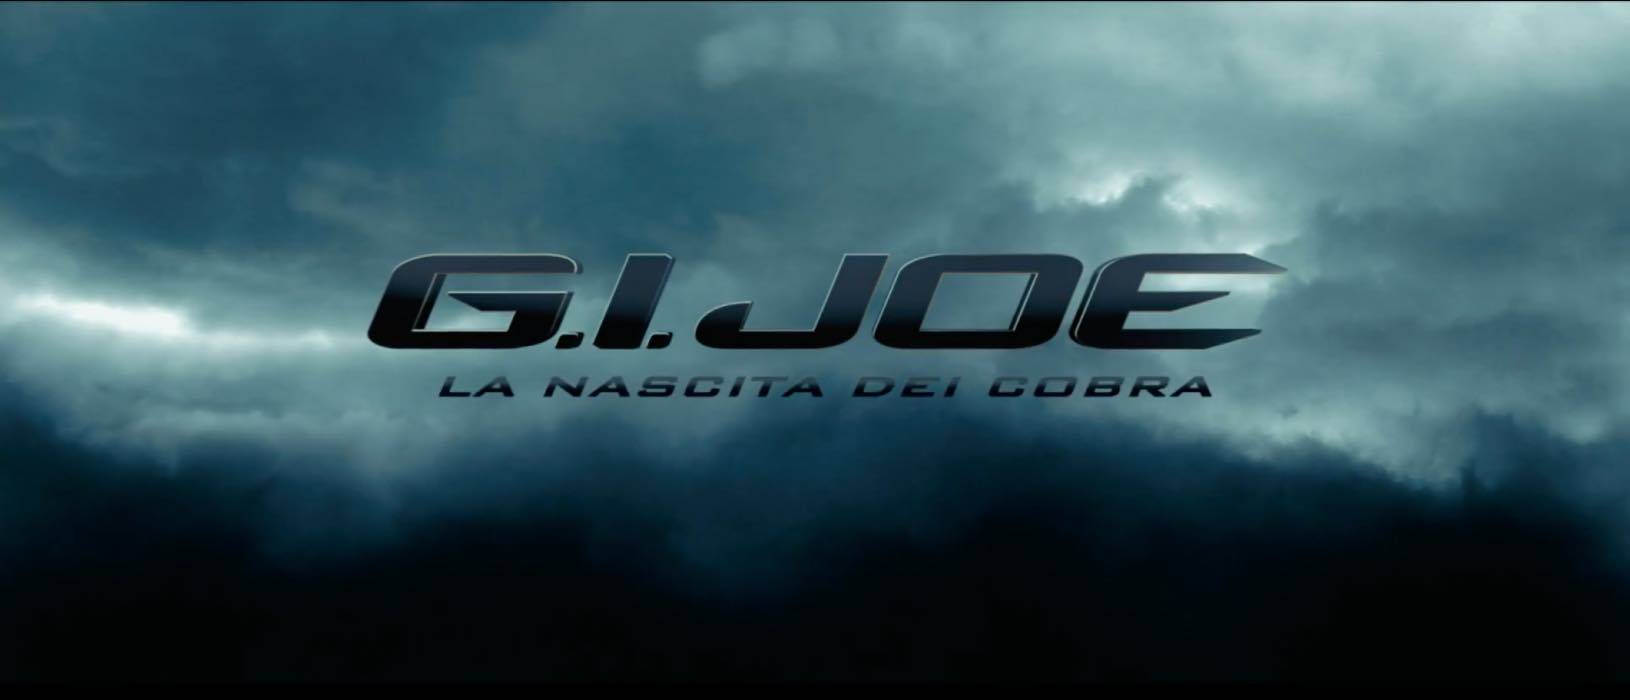 Italia 1, 'G.I. Joe - La nascita dei Cobra': info, trama e cast sul film